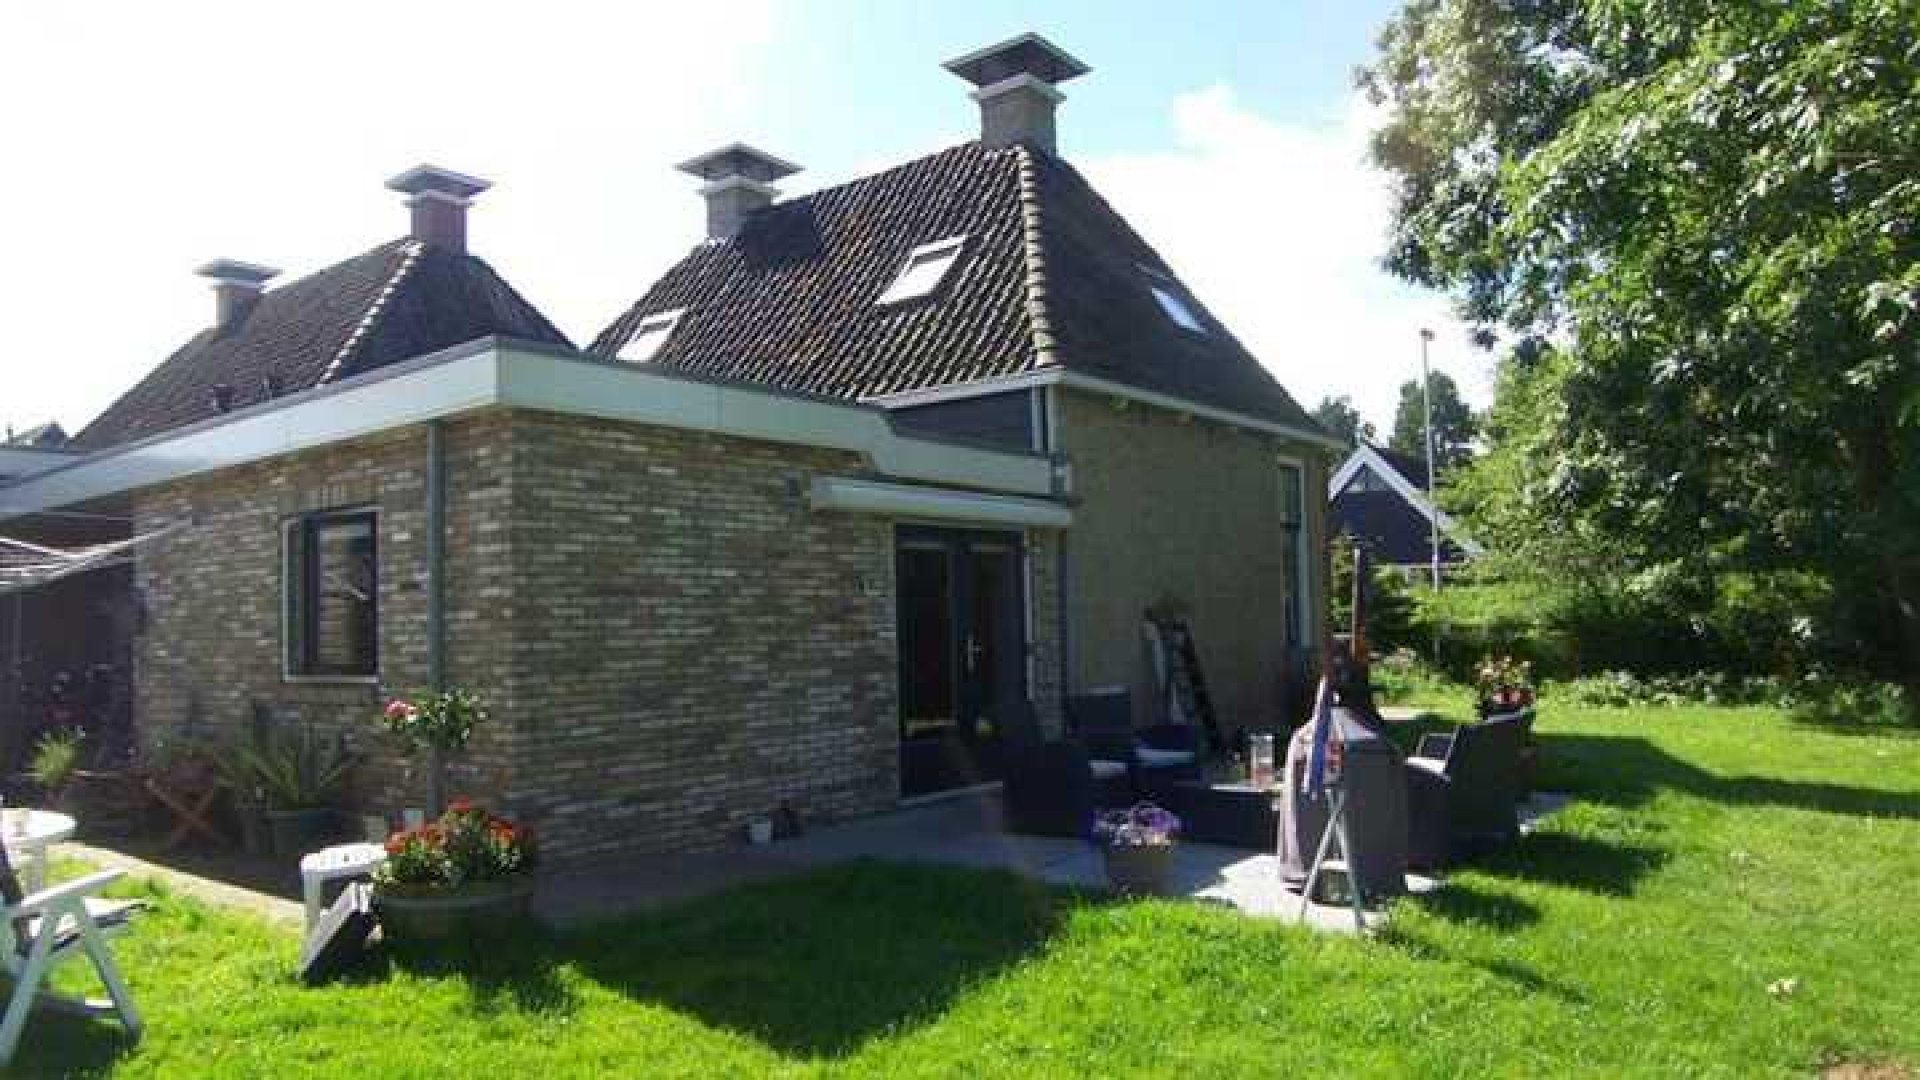 Huis Piet Paulusma eindelijk na meer dan drie jaar verkocht. Zie foto's